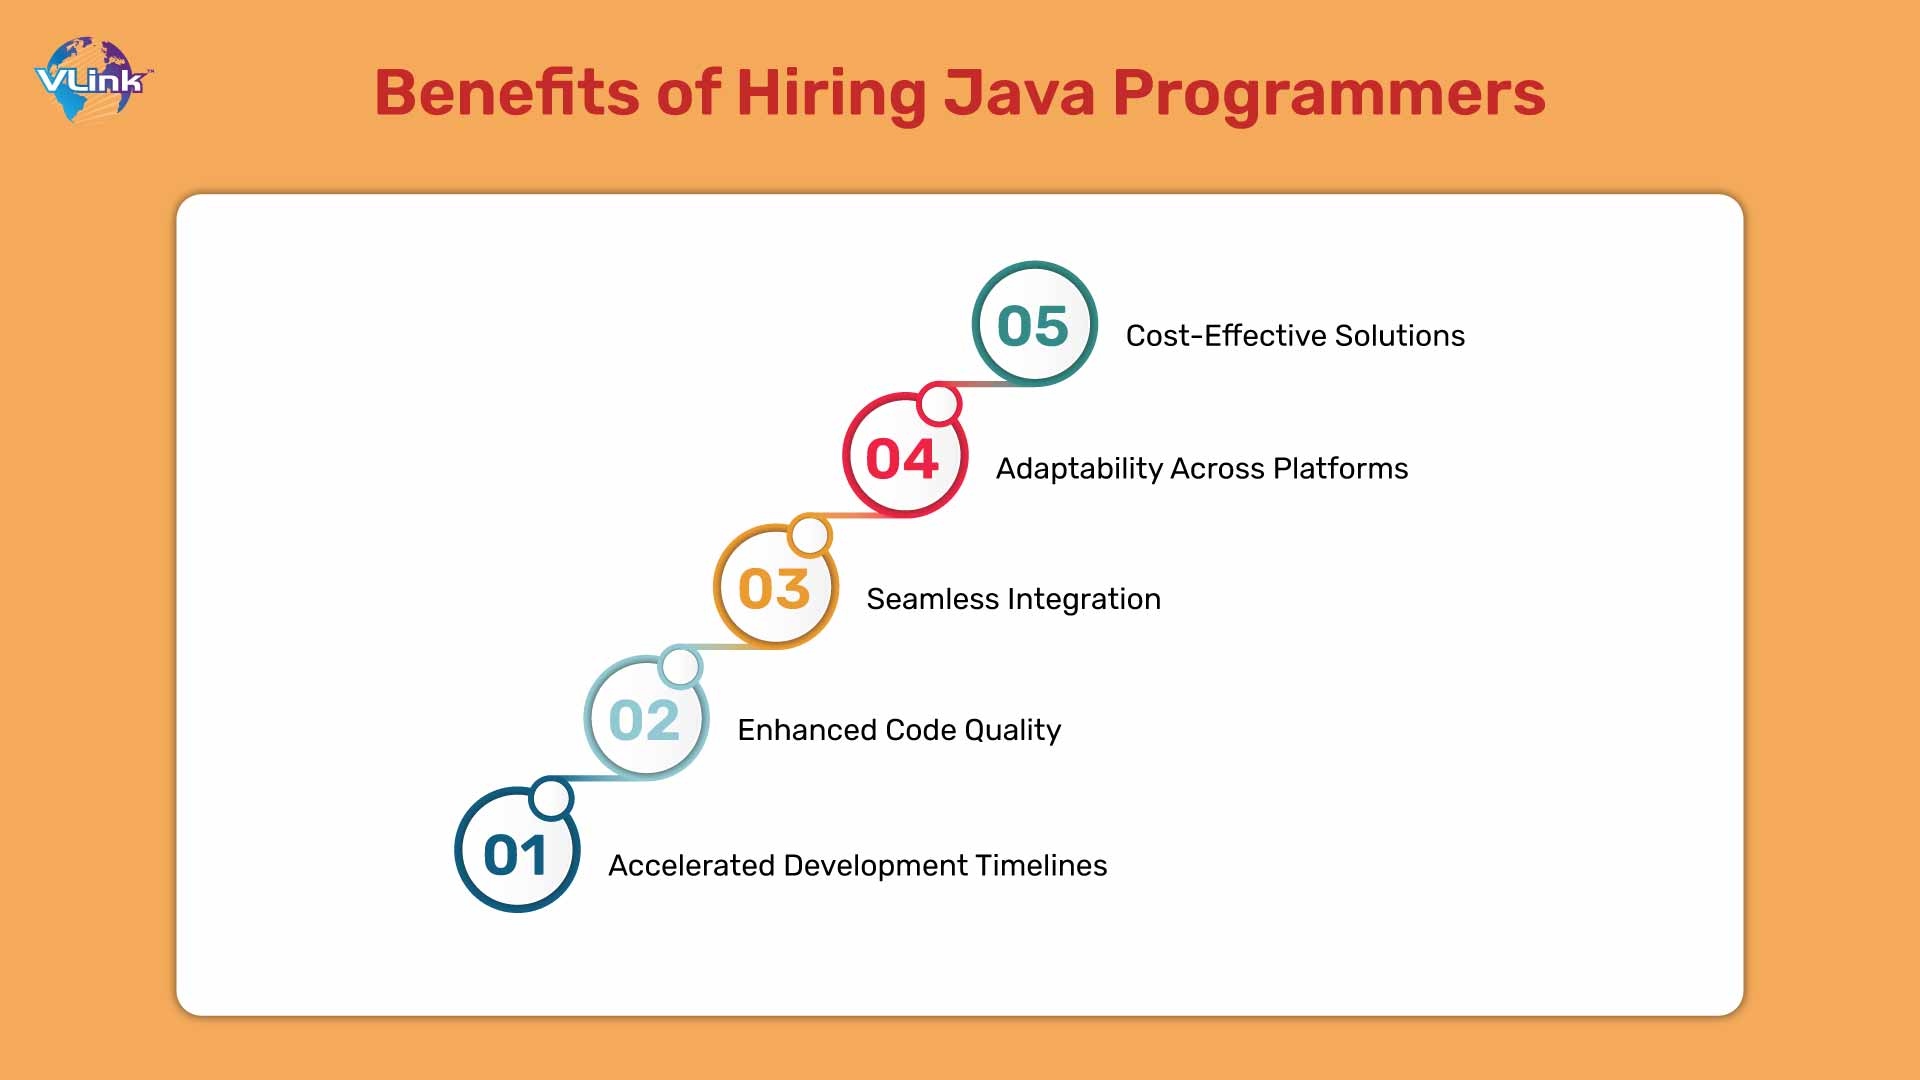 Benefits of Hiring Java Programmers